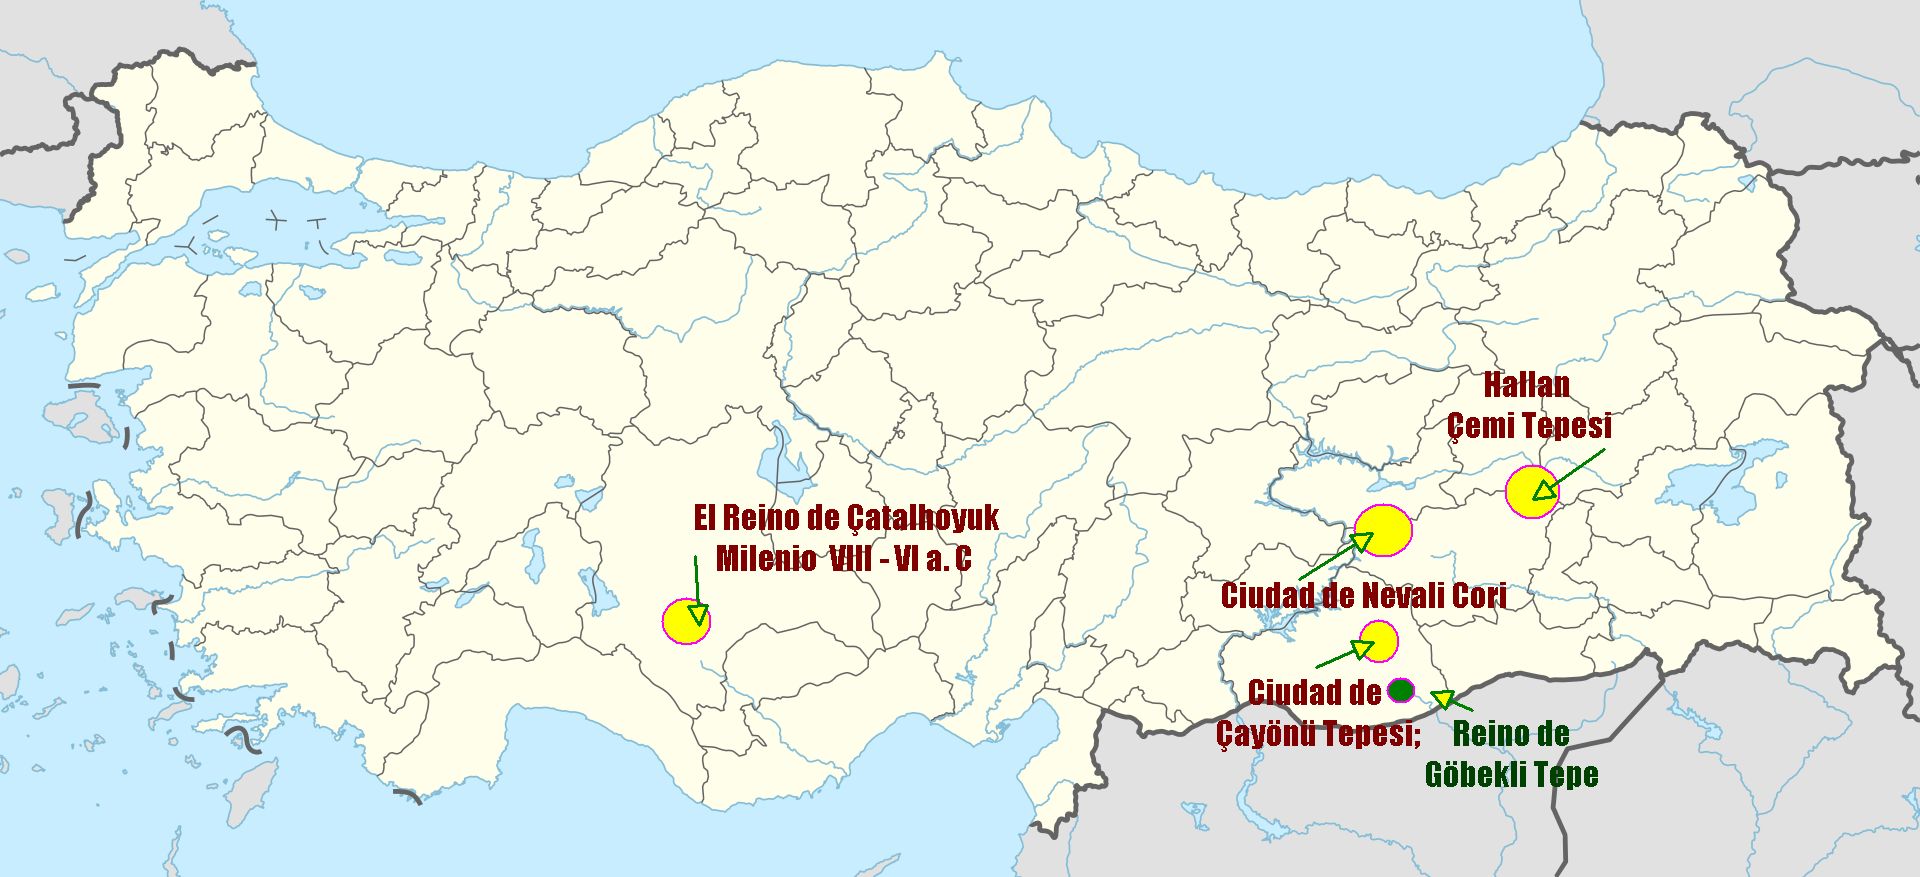 El reino de Çatalhoyuk